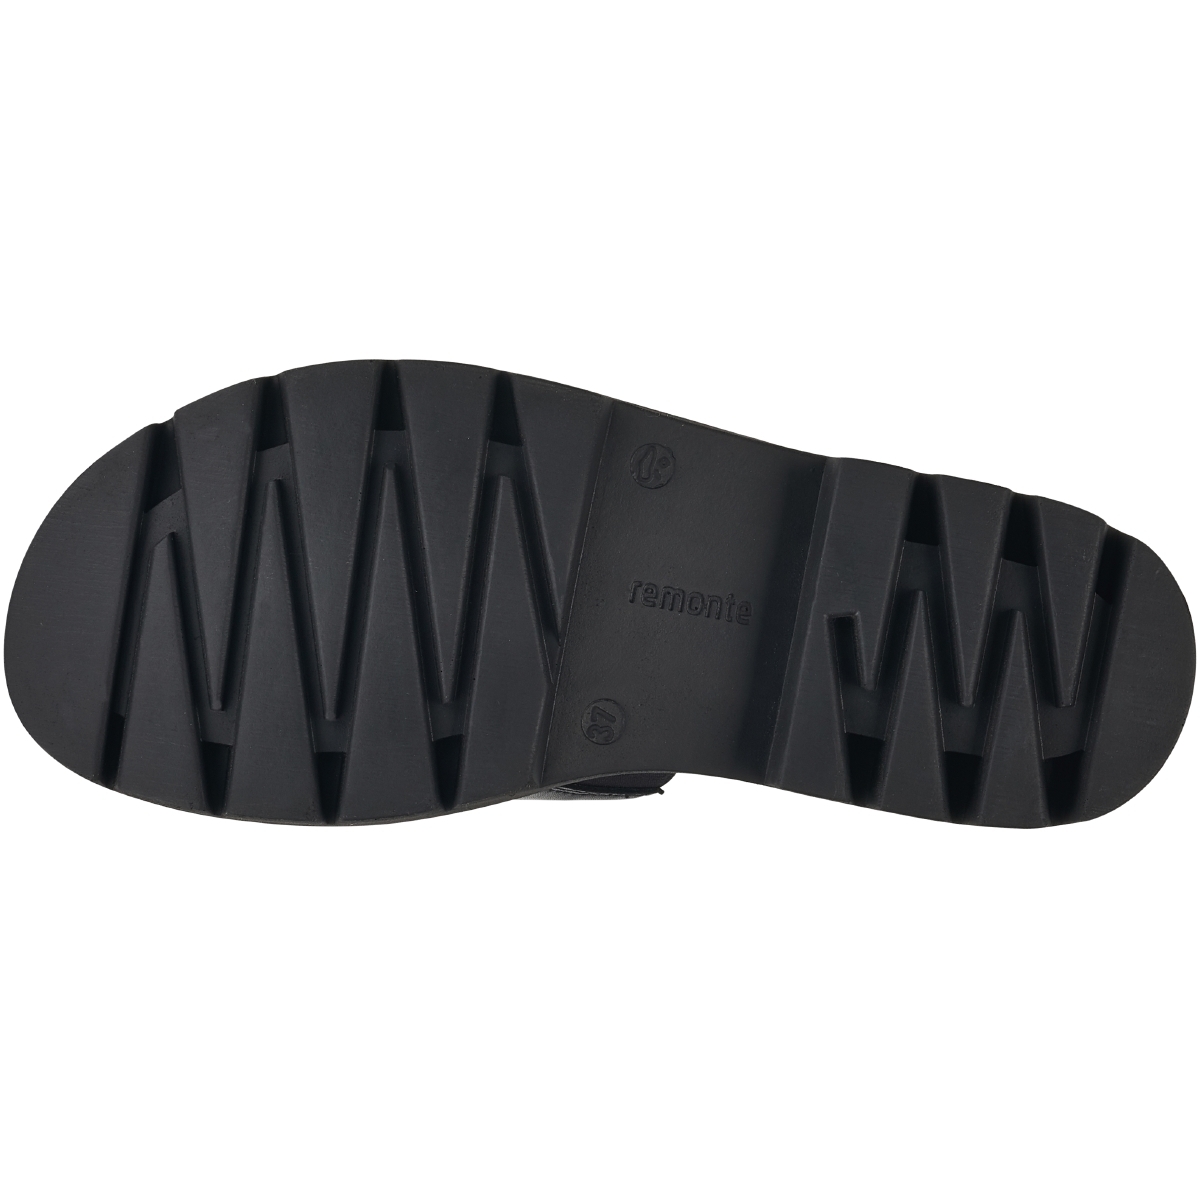 Remonte D7952 Sandale schwarz